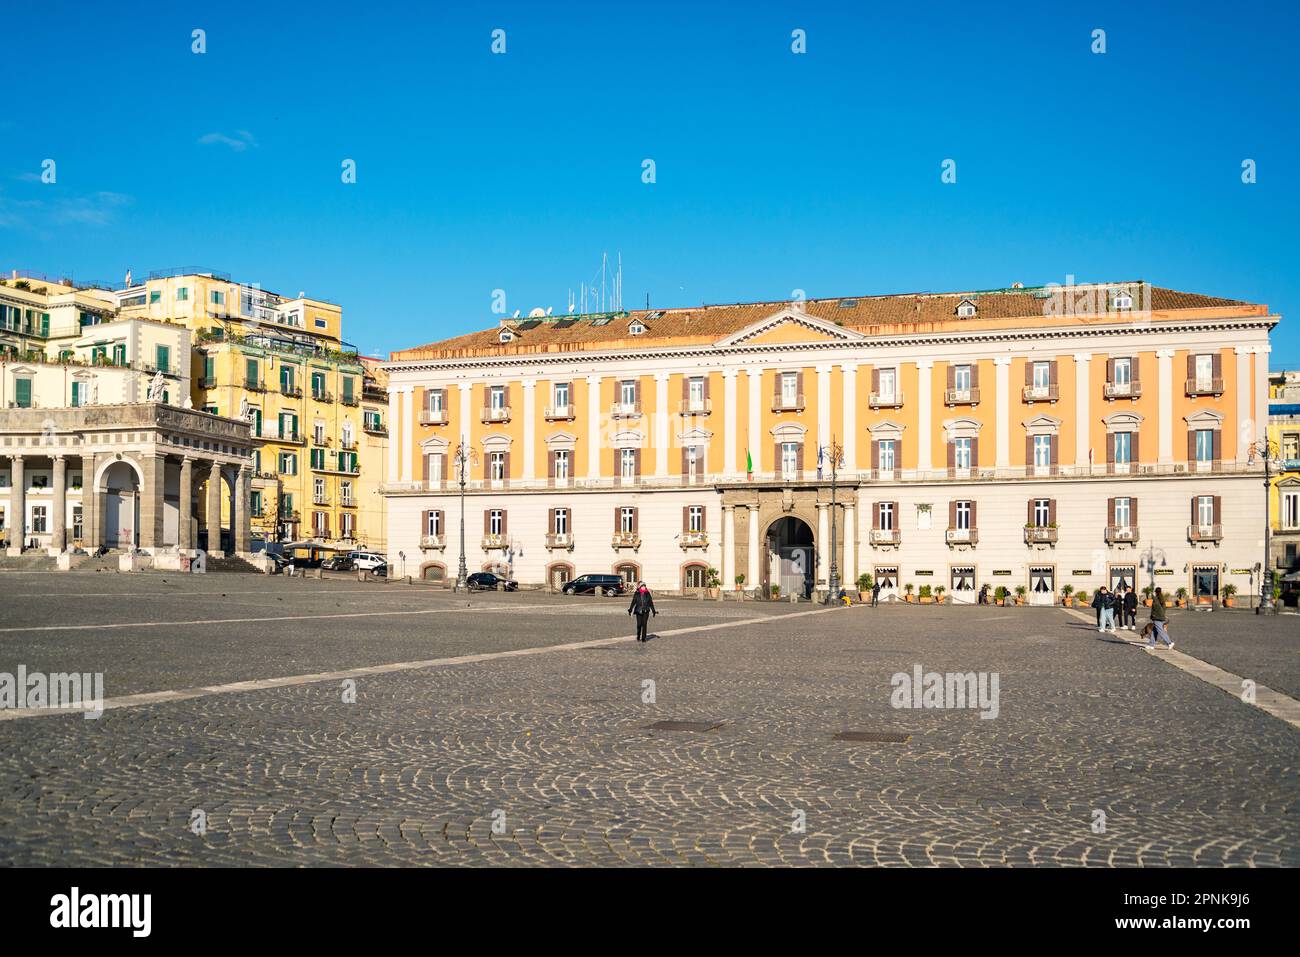 Il Palazzo della Prefettura è un palazzo monumentale situato nella centrale Piazza del Plebiscito a Napoli. Foto Stock